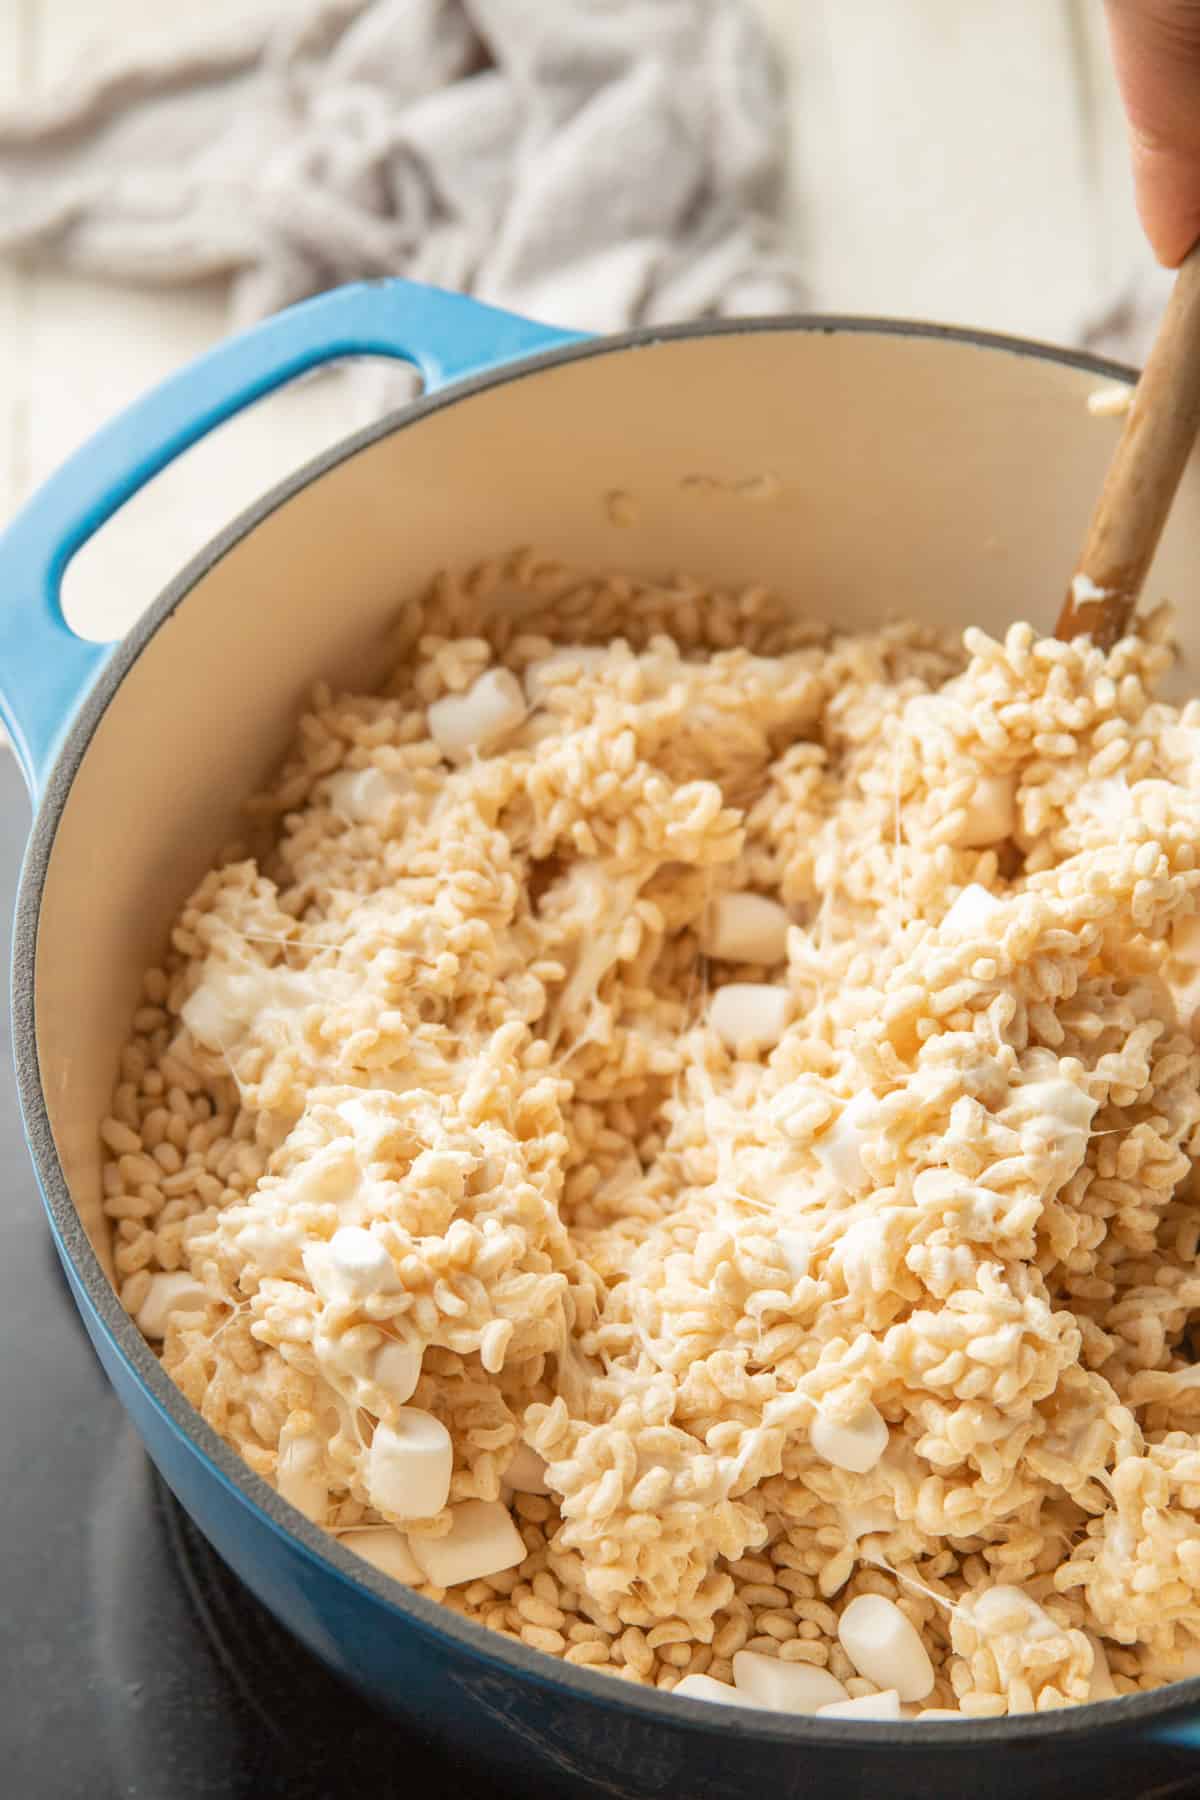 Con una cuchara, revuelve el cereal de arroz crujiente en la mezcla de malvavisco derretida en una cacerola.